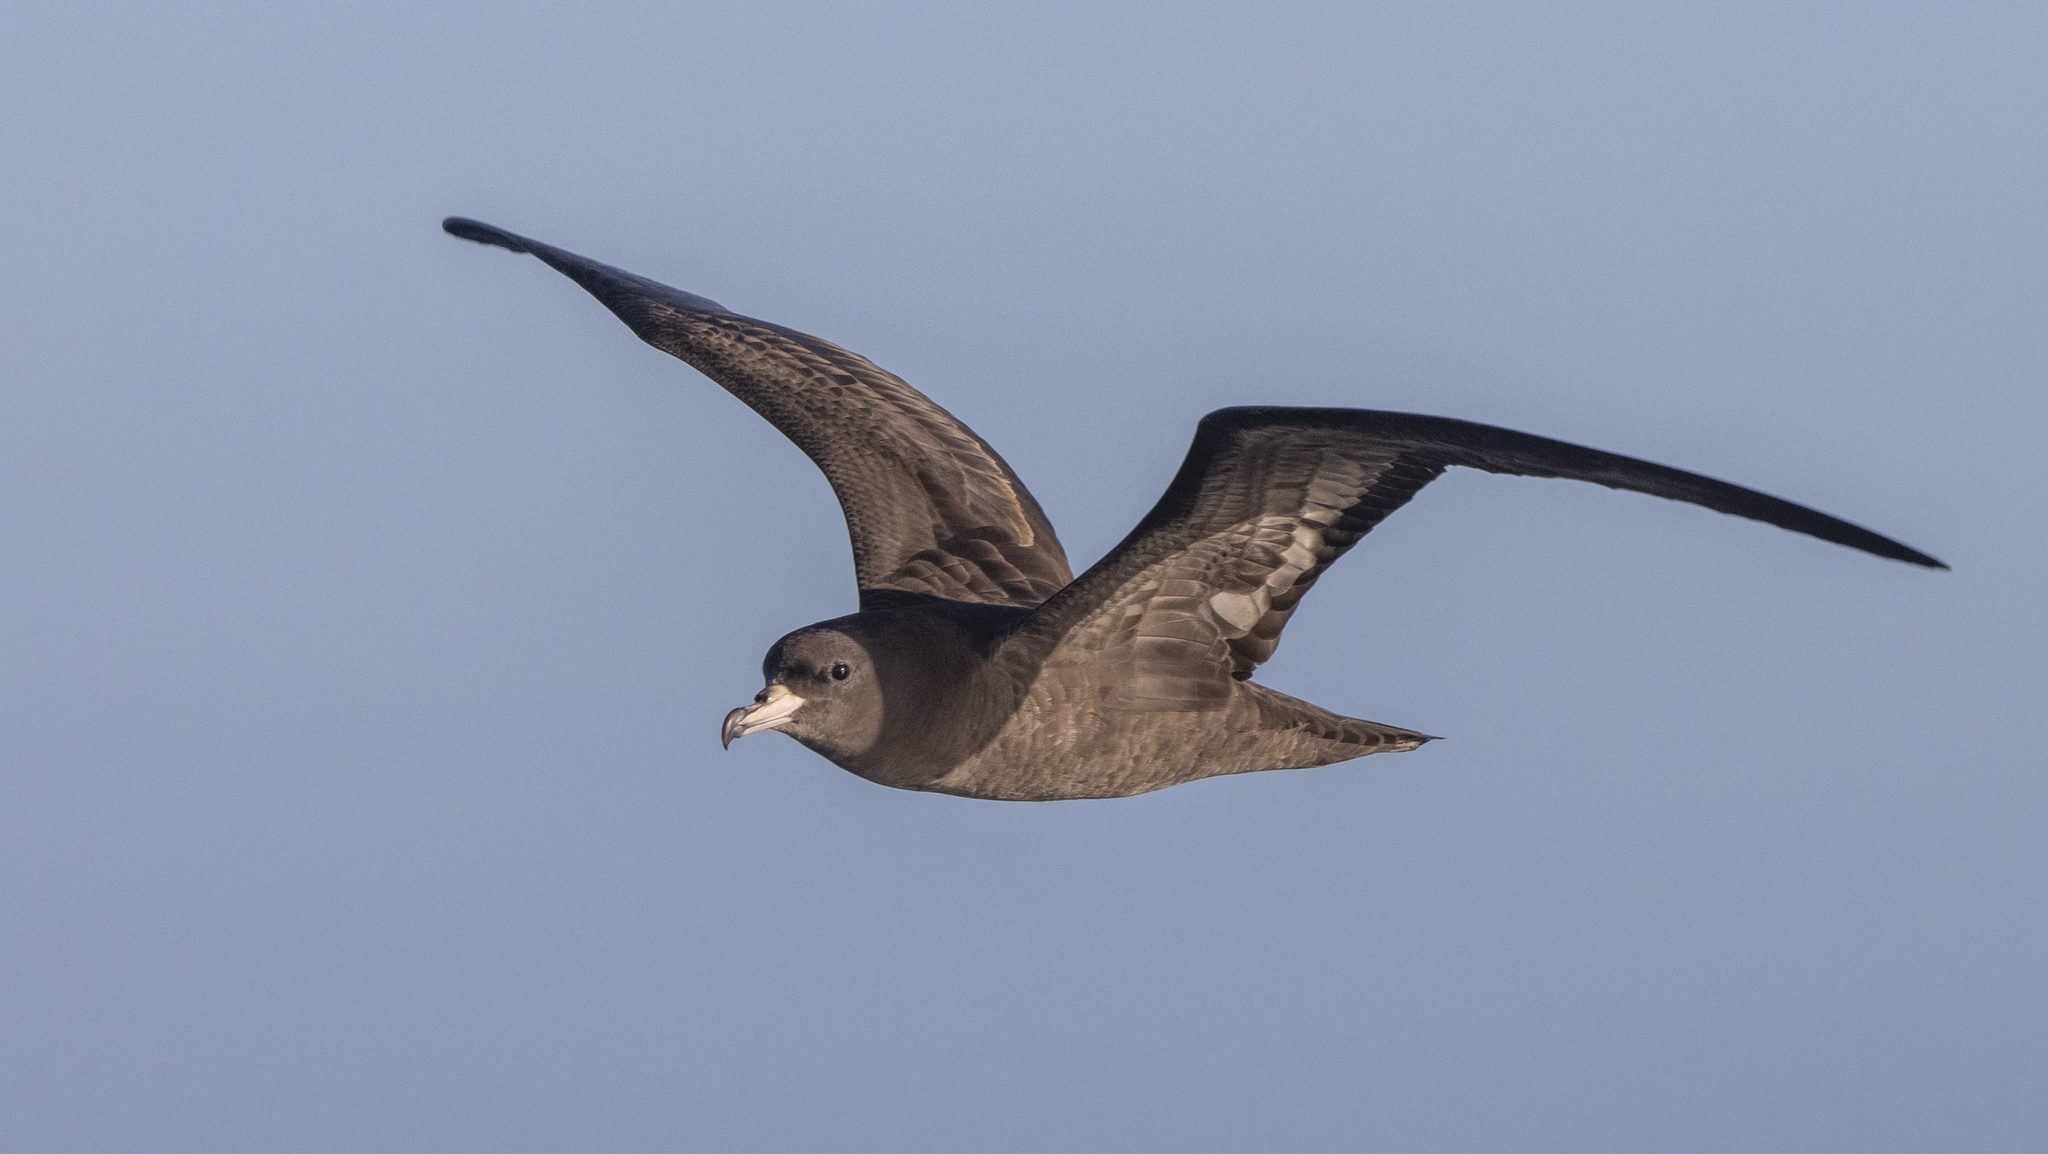 dark seabird flying against the sky